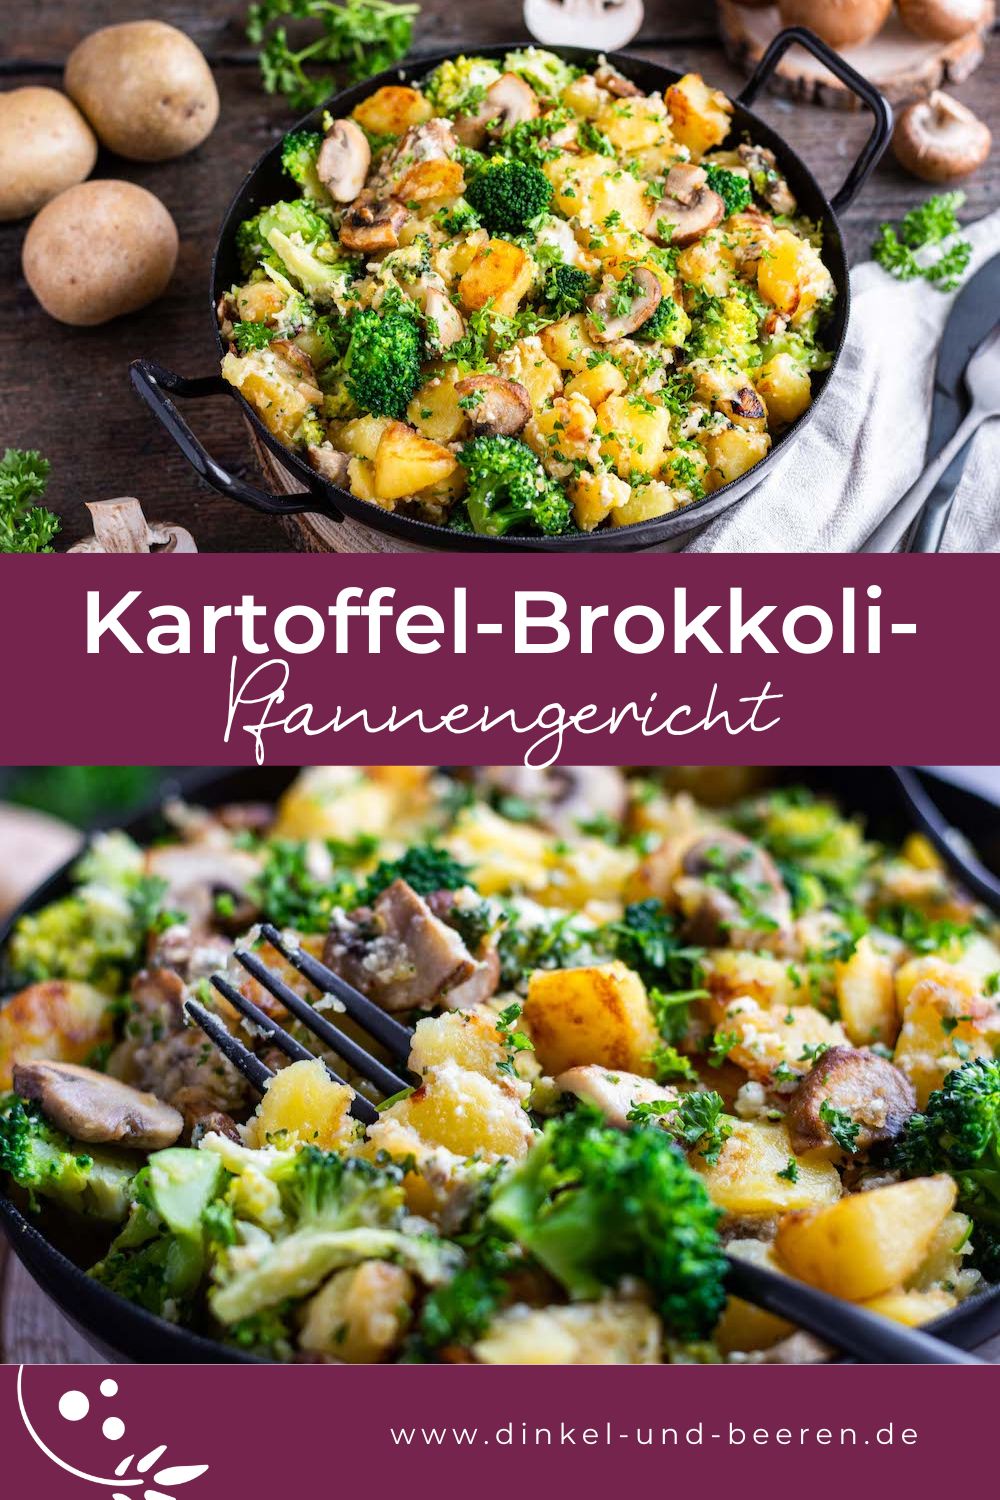 Pinterest-Grafik mit zwei Fotos der Kartoffel-Brokkoli-Pfanne, dazu der Schriftzug "Kartoffel-Brokkoli-Pfannengericht".